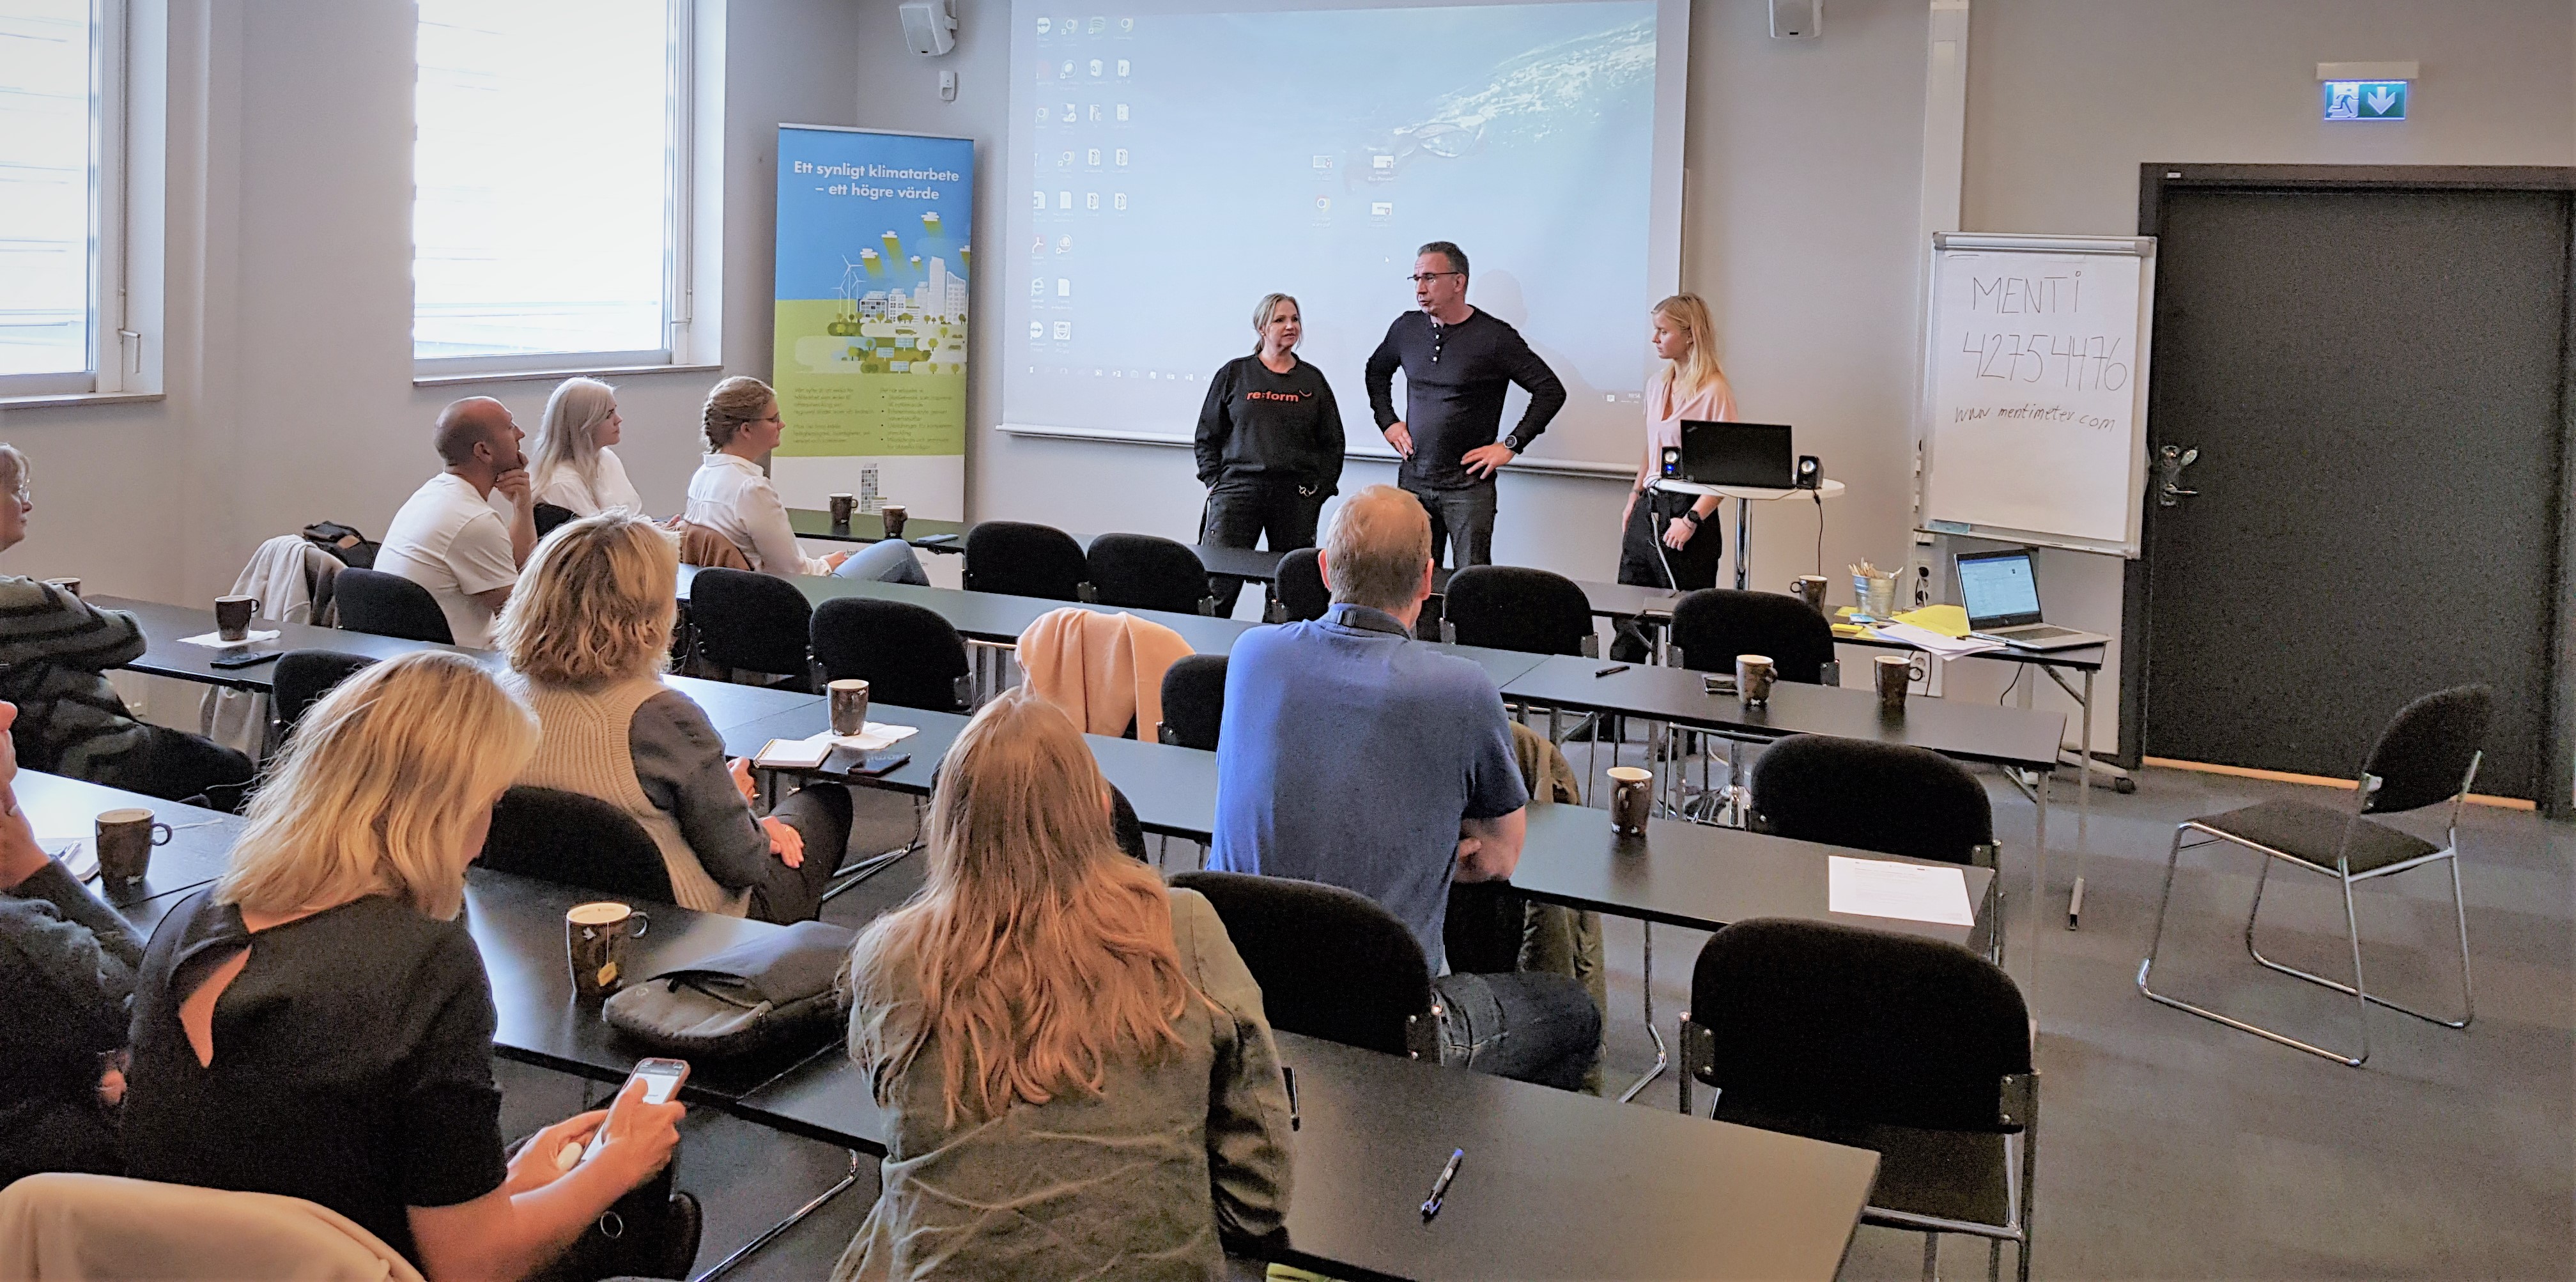 Micael Björk, Christel Flygare och Helena Lindfors från det arbetsintegrerande, sociala företaget Re-form